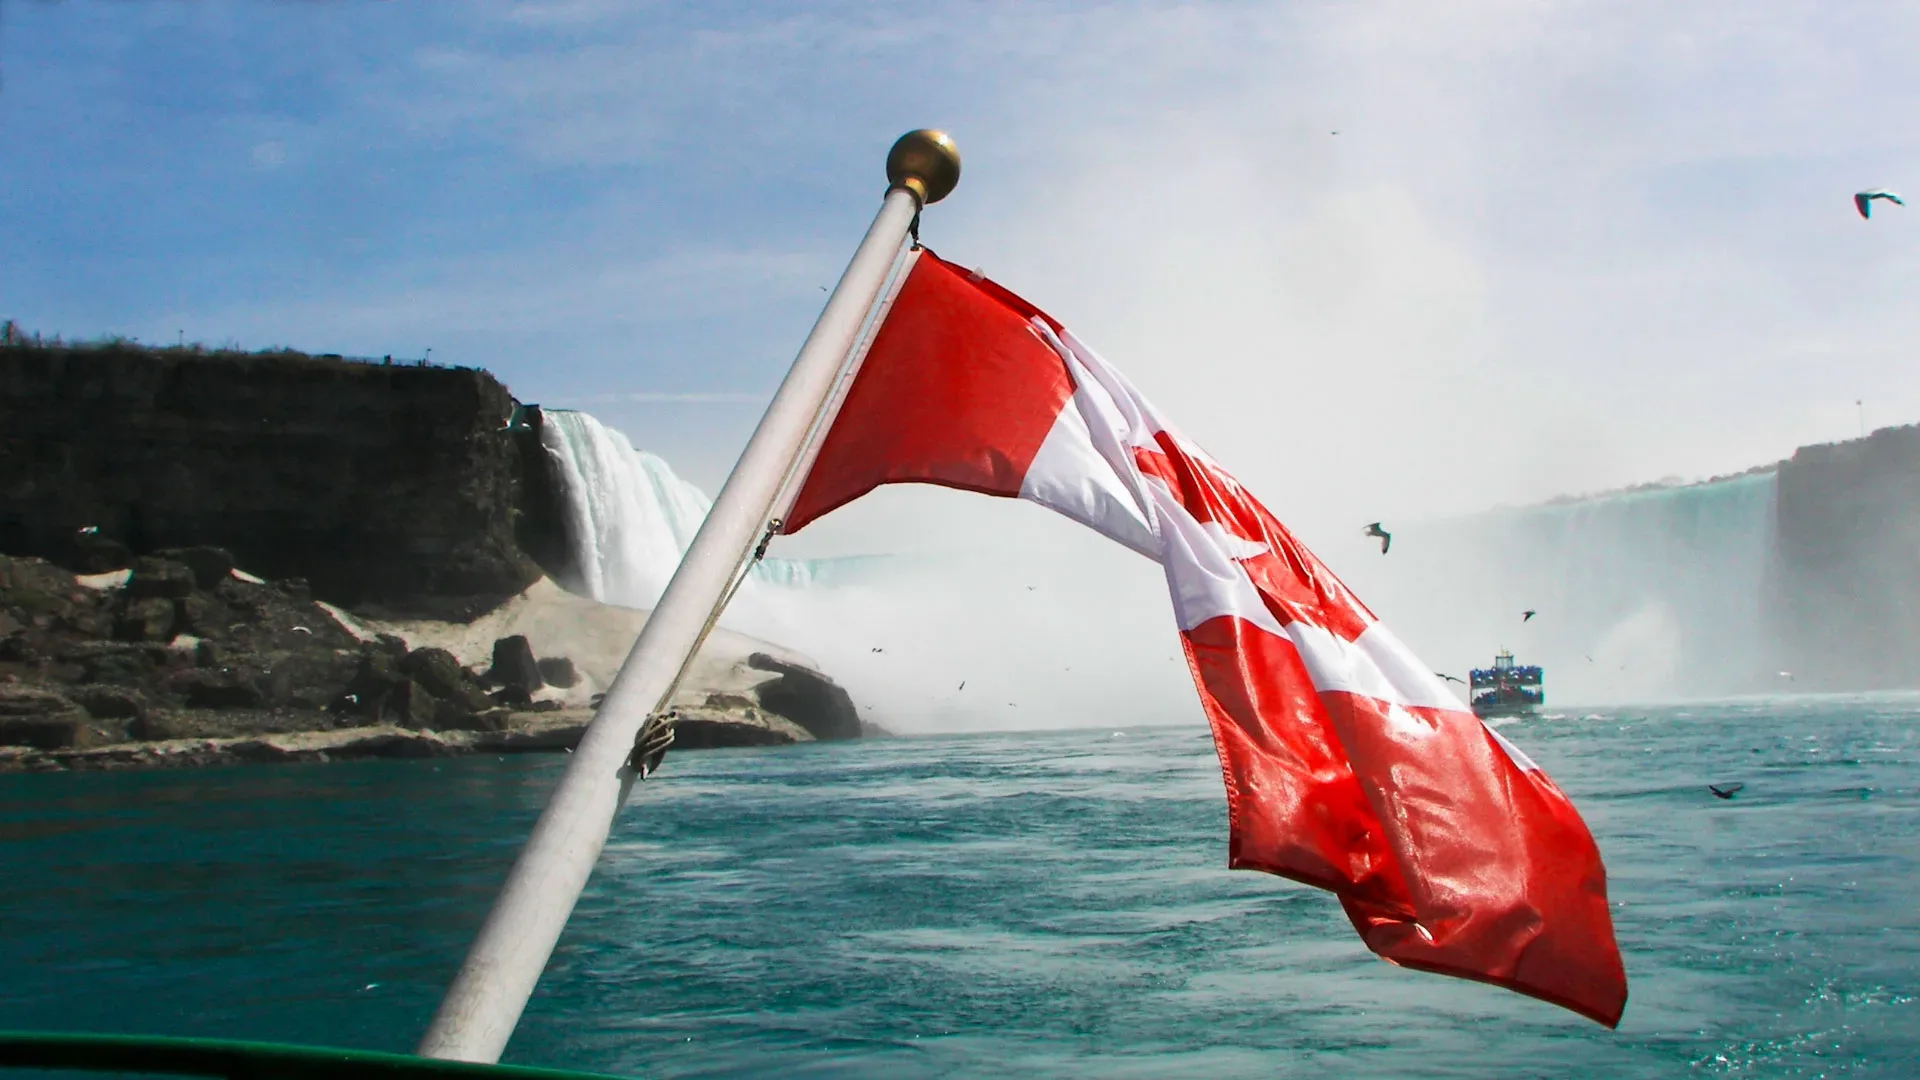 Fahne Kanada Canada kaufen – Landesfahne